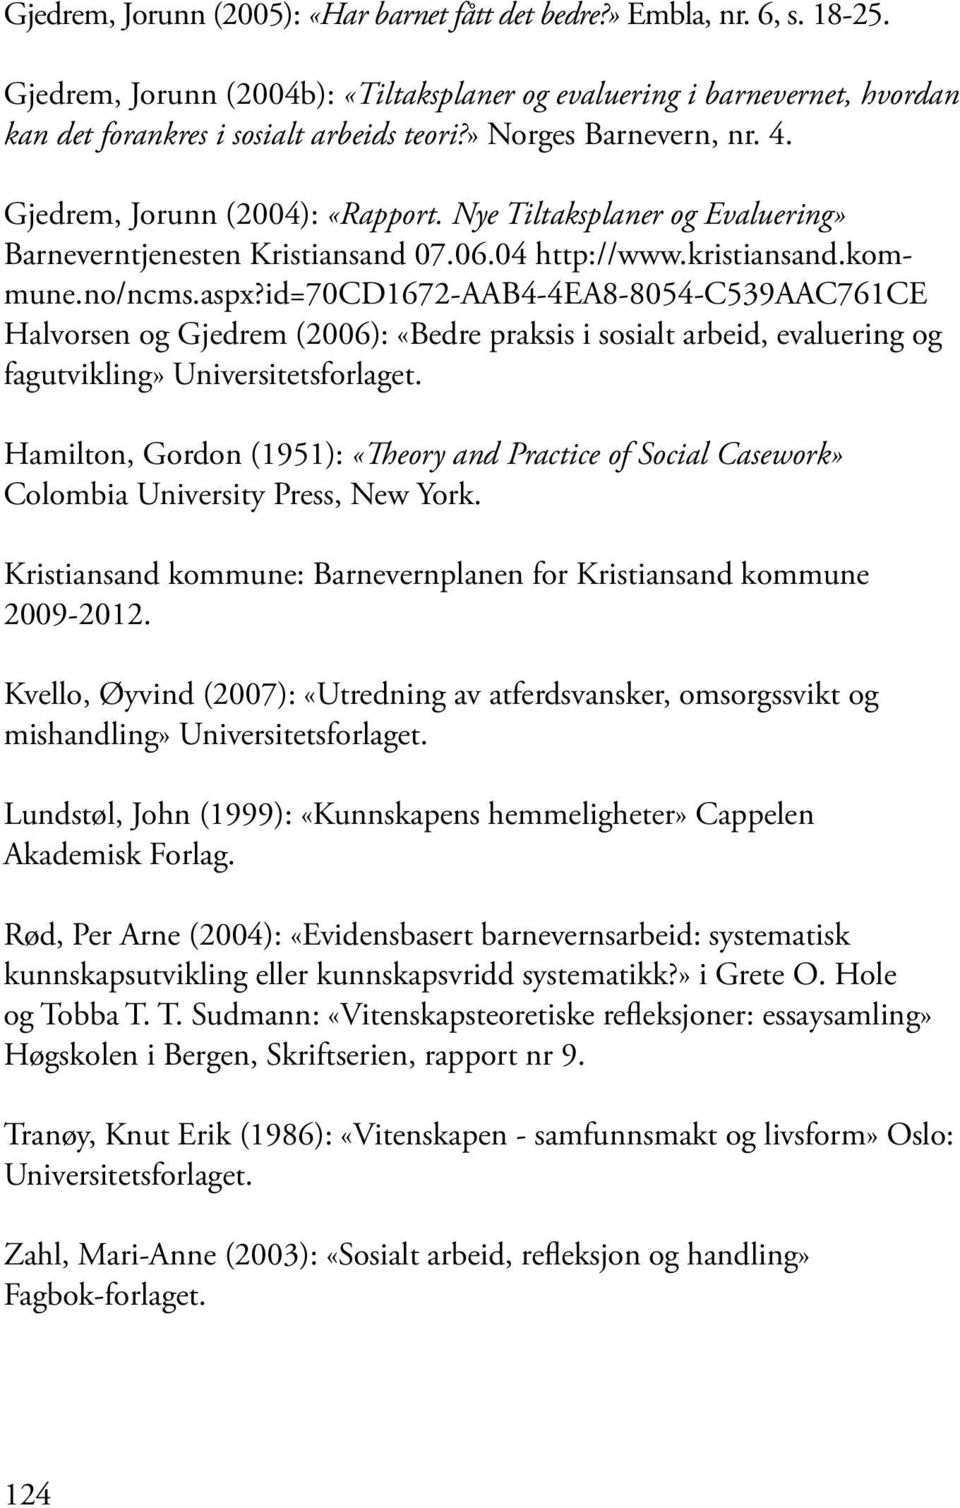 id=70cd1672-aab4-4ea8-8054-c539aac761ce Halvorsen og Gjedrem (2006): «Bedre praksis i sosialt arbeid, evaluering og fagutvikling» Universitetsforlaget.